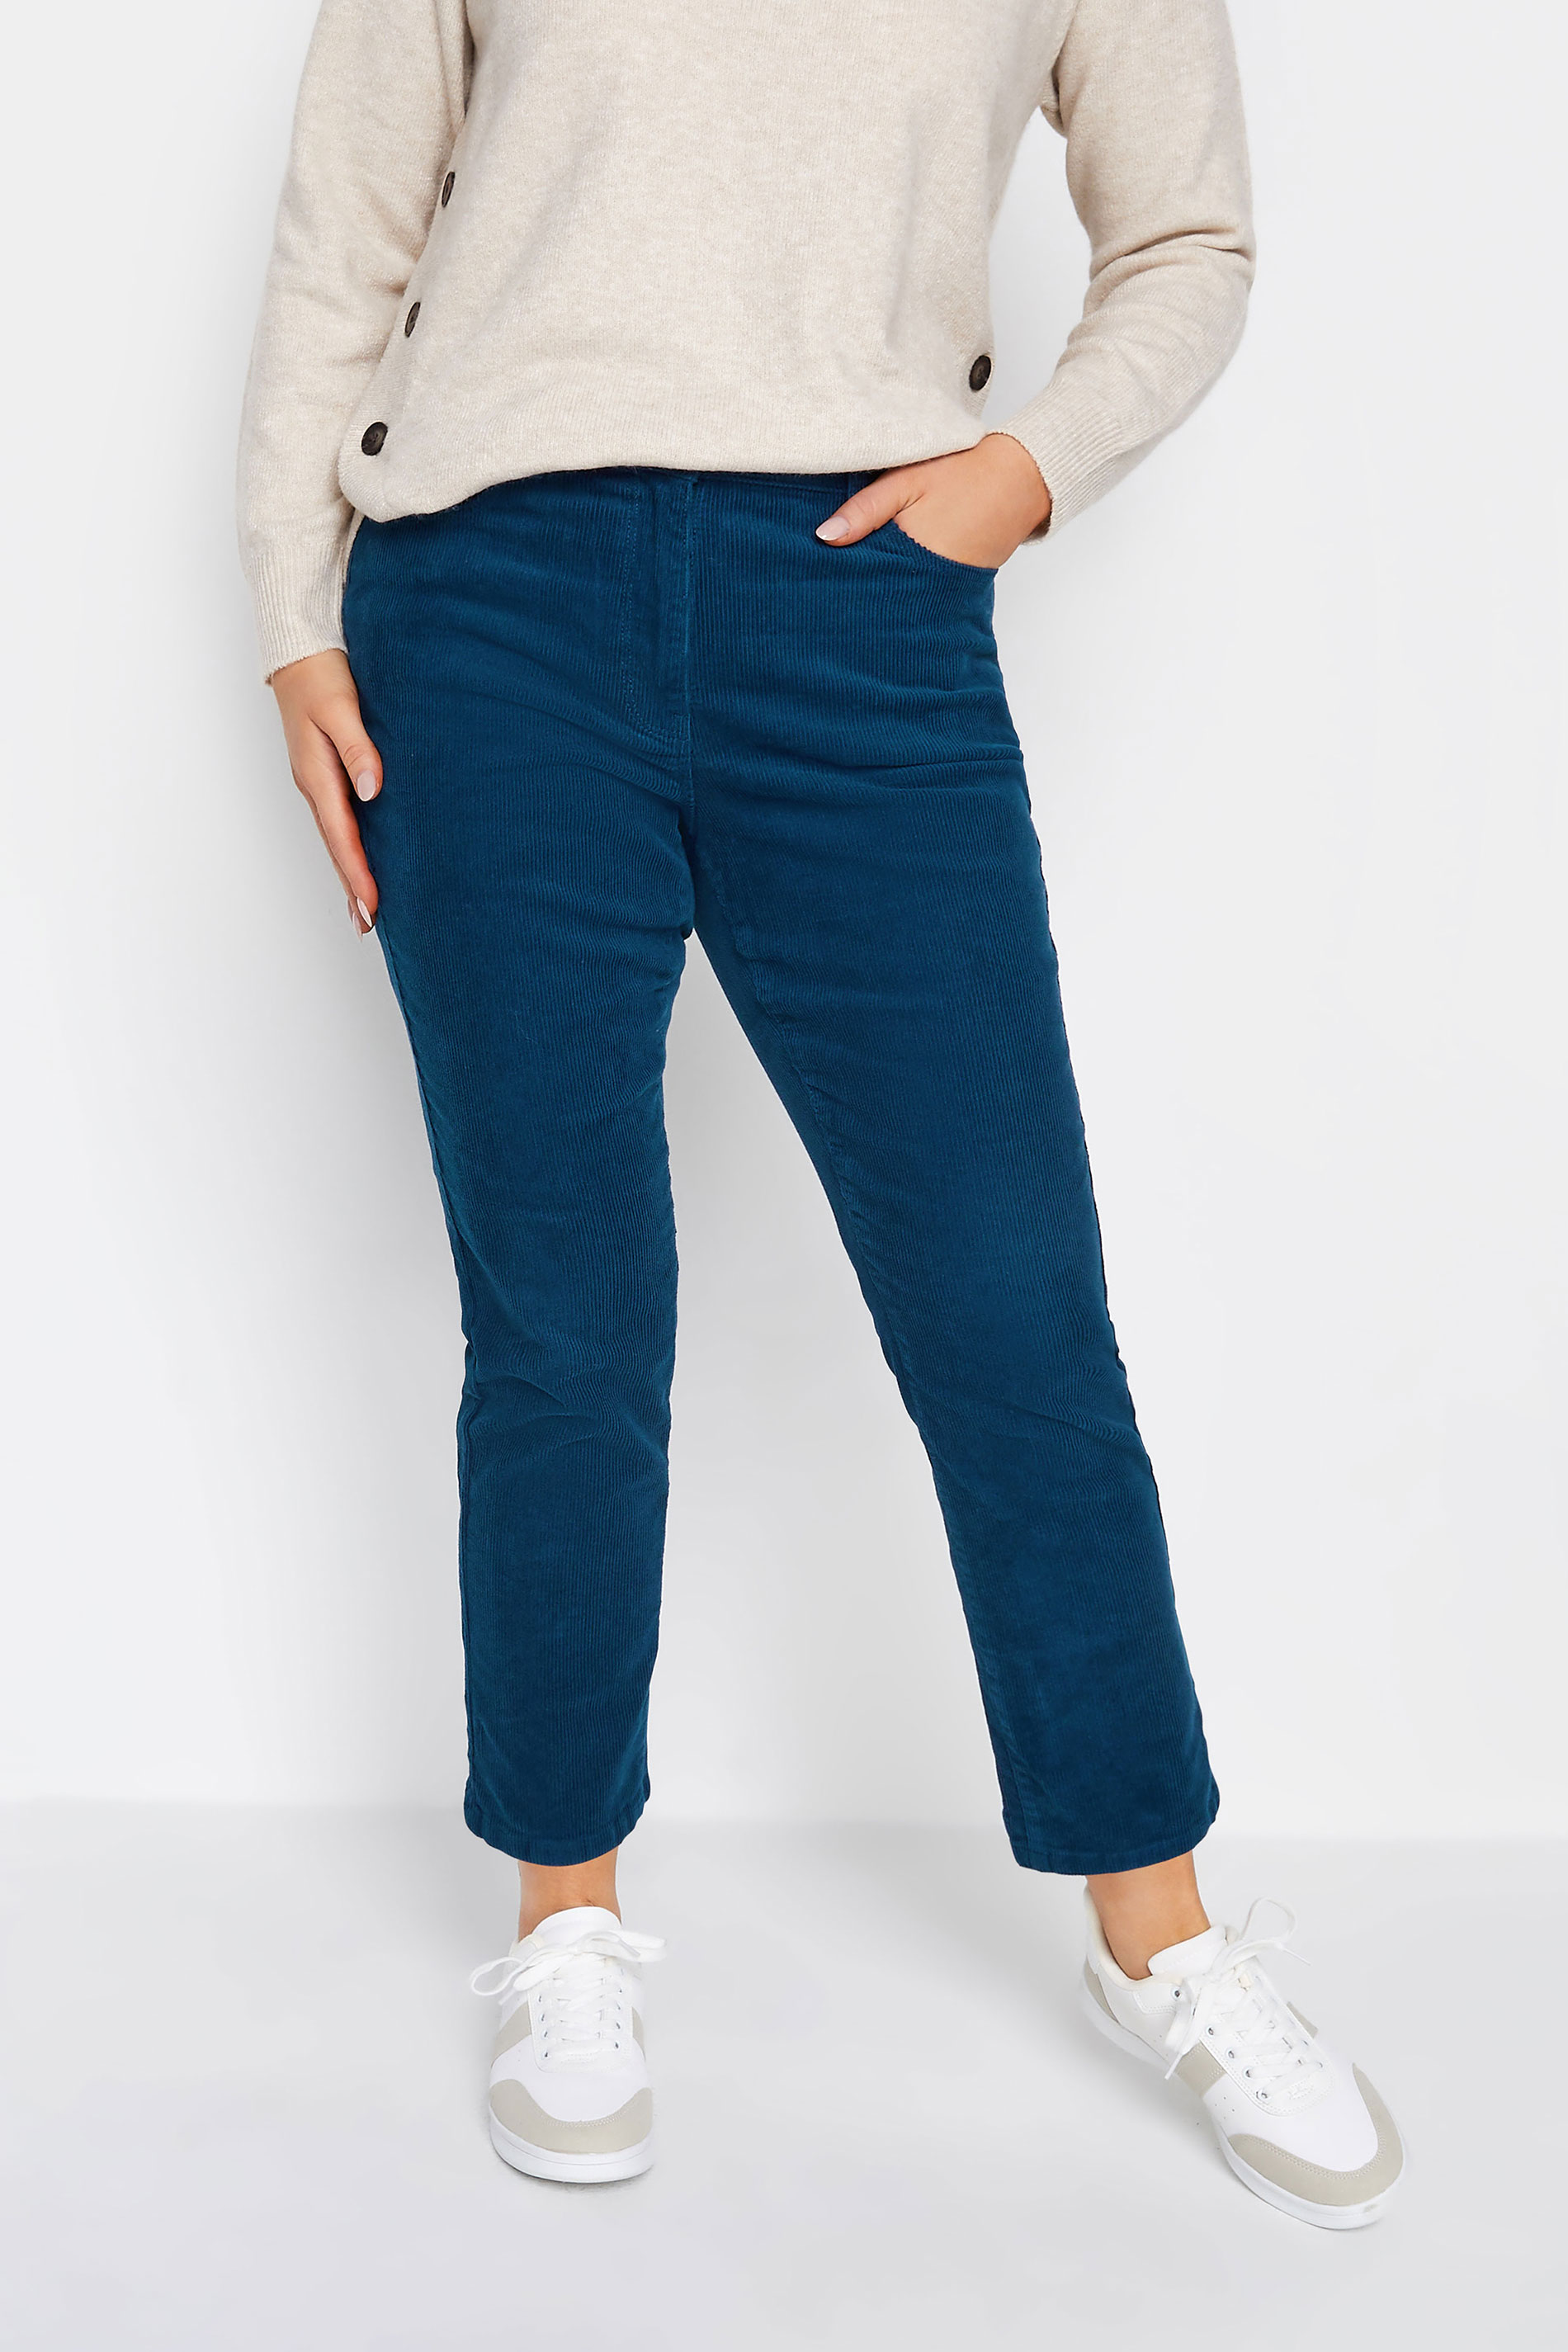 Thick Corduroy Fleece Lined Trousers Women Winter Warm Pants Long  Sweatpants | eBay